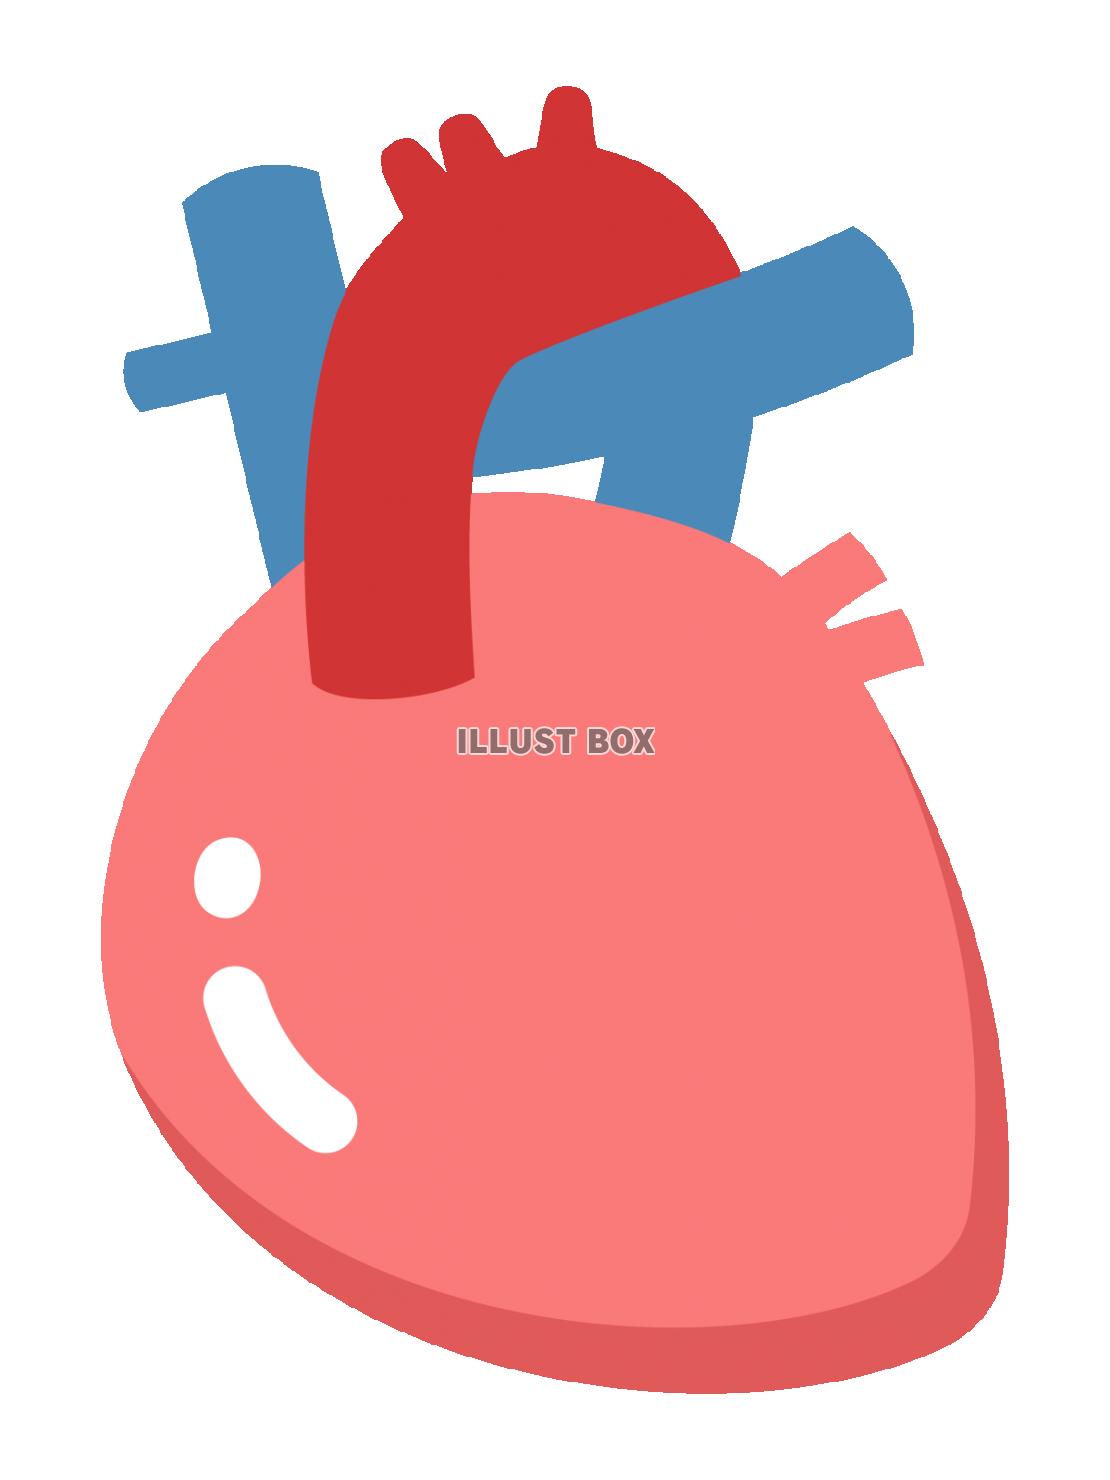 心臓のイラスト